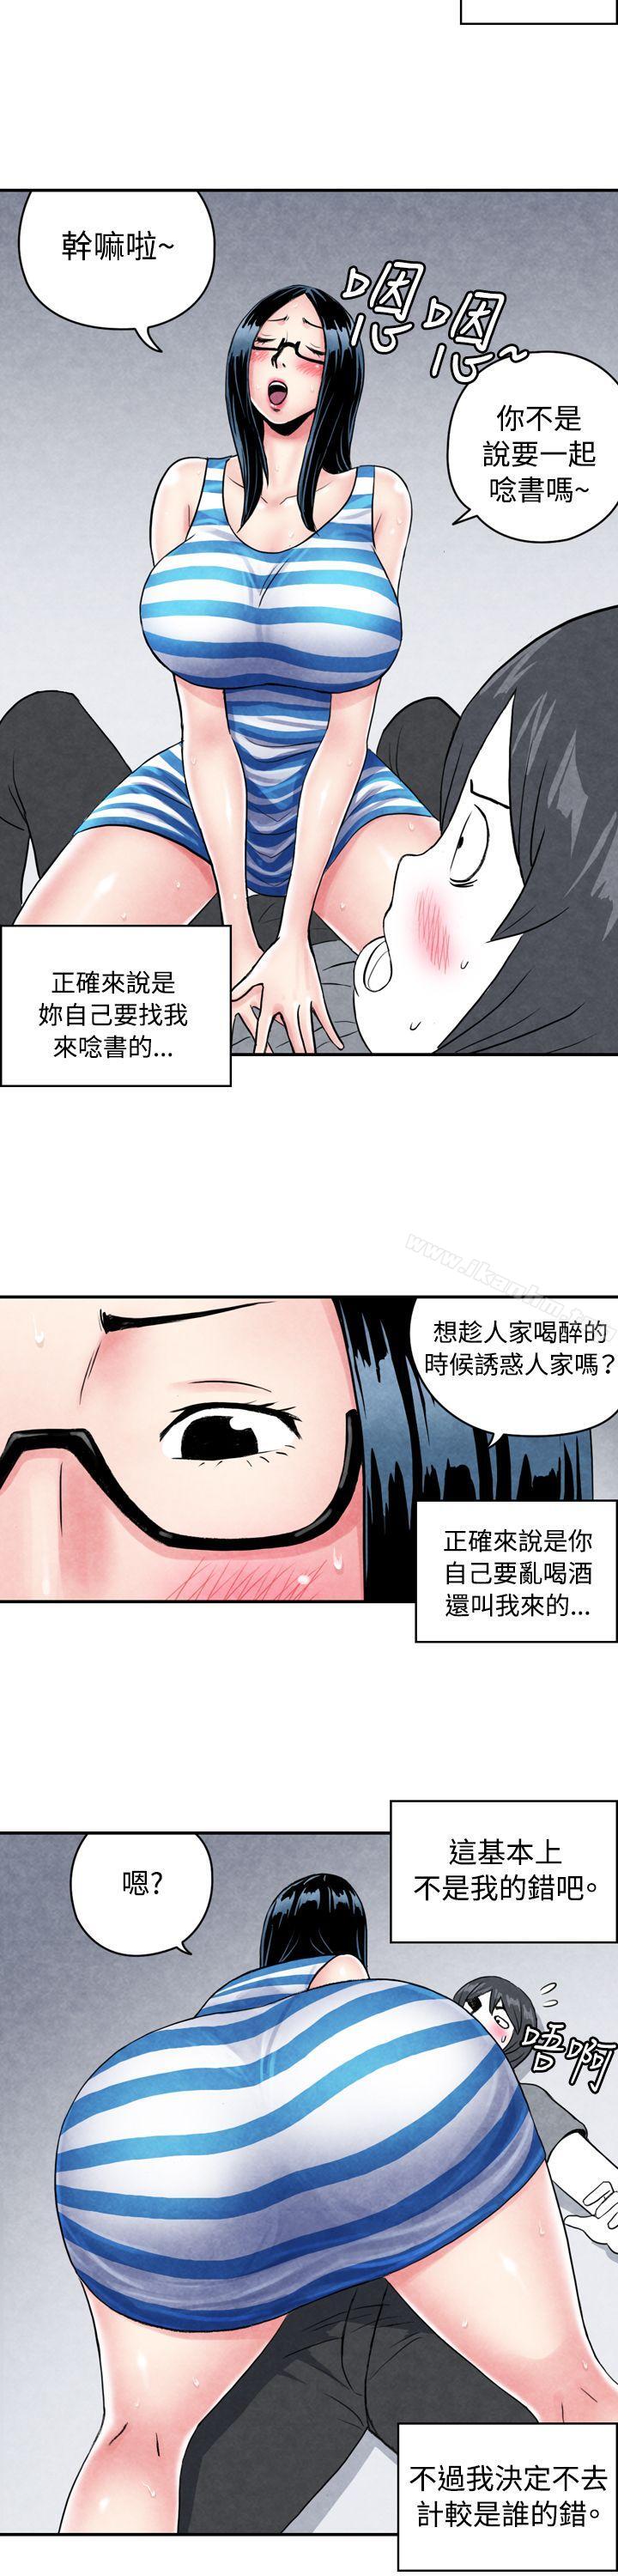 漫画韩国 生物學的女性攻略法   - 立即阅读 生物學的女性攻略法 CASE 01-1. 頭腦聰明的男性第12漫画图片